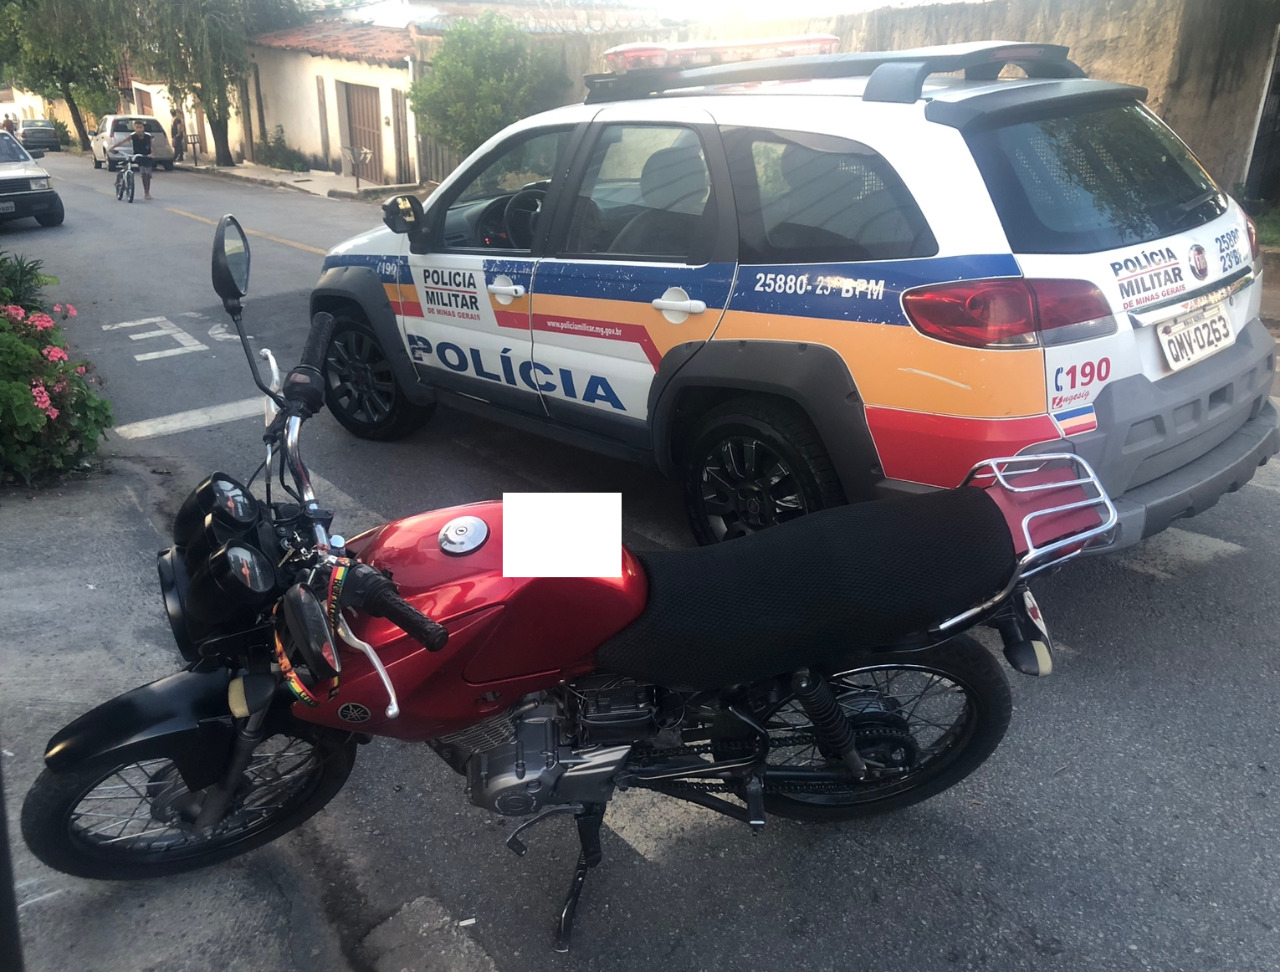 Motocicleta furtada mobiliza PM em Itaúna: homem de 21 anos é preso e adolescente de 16, apreendido